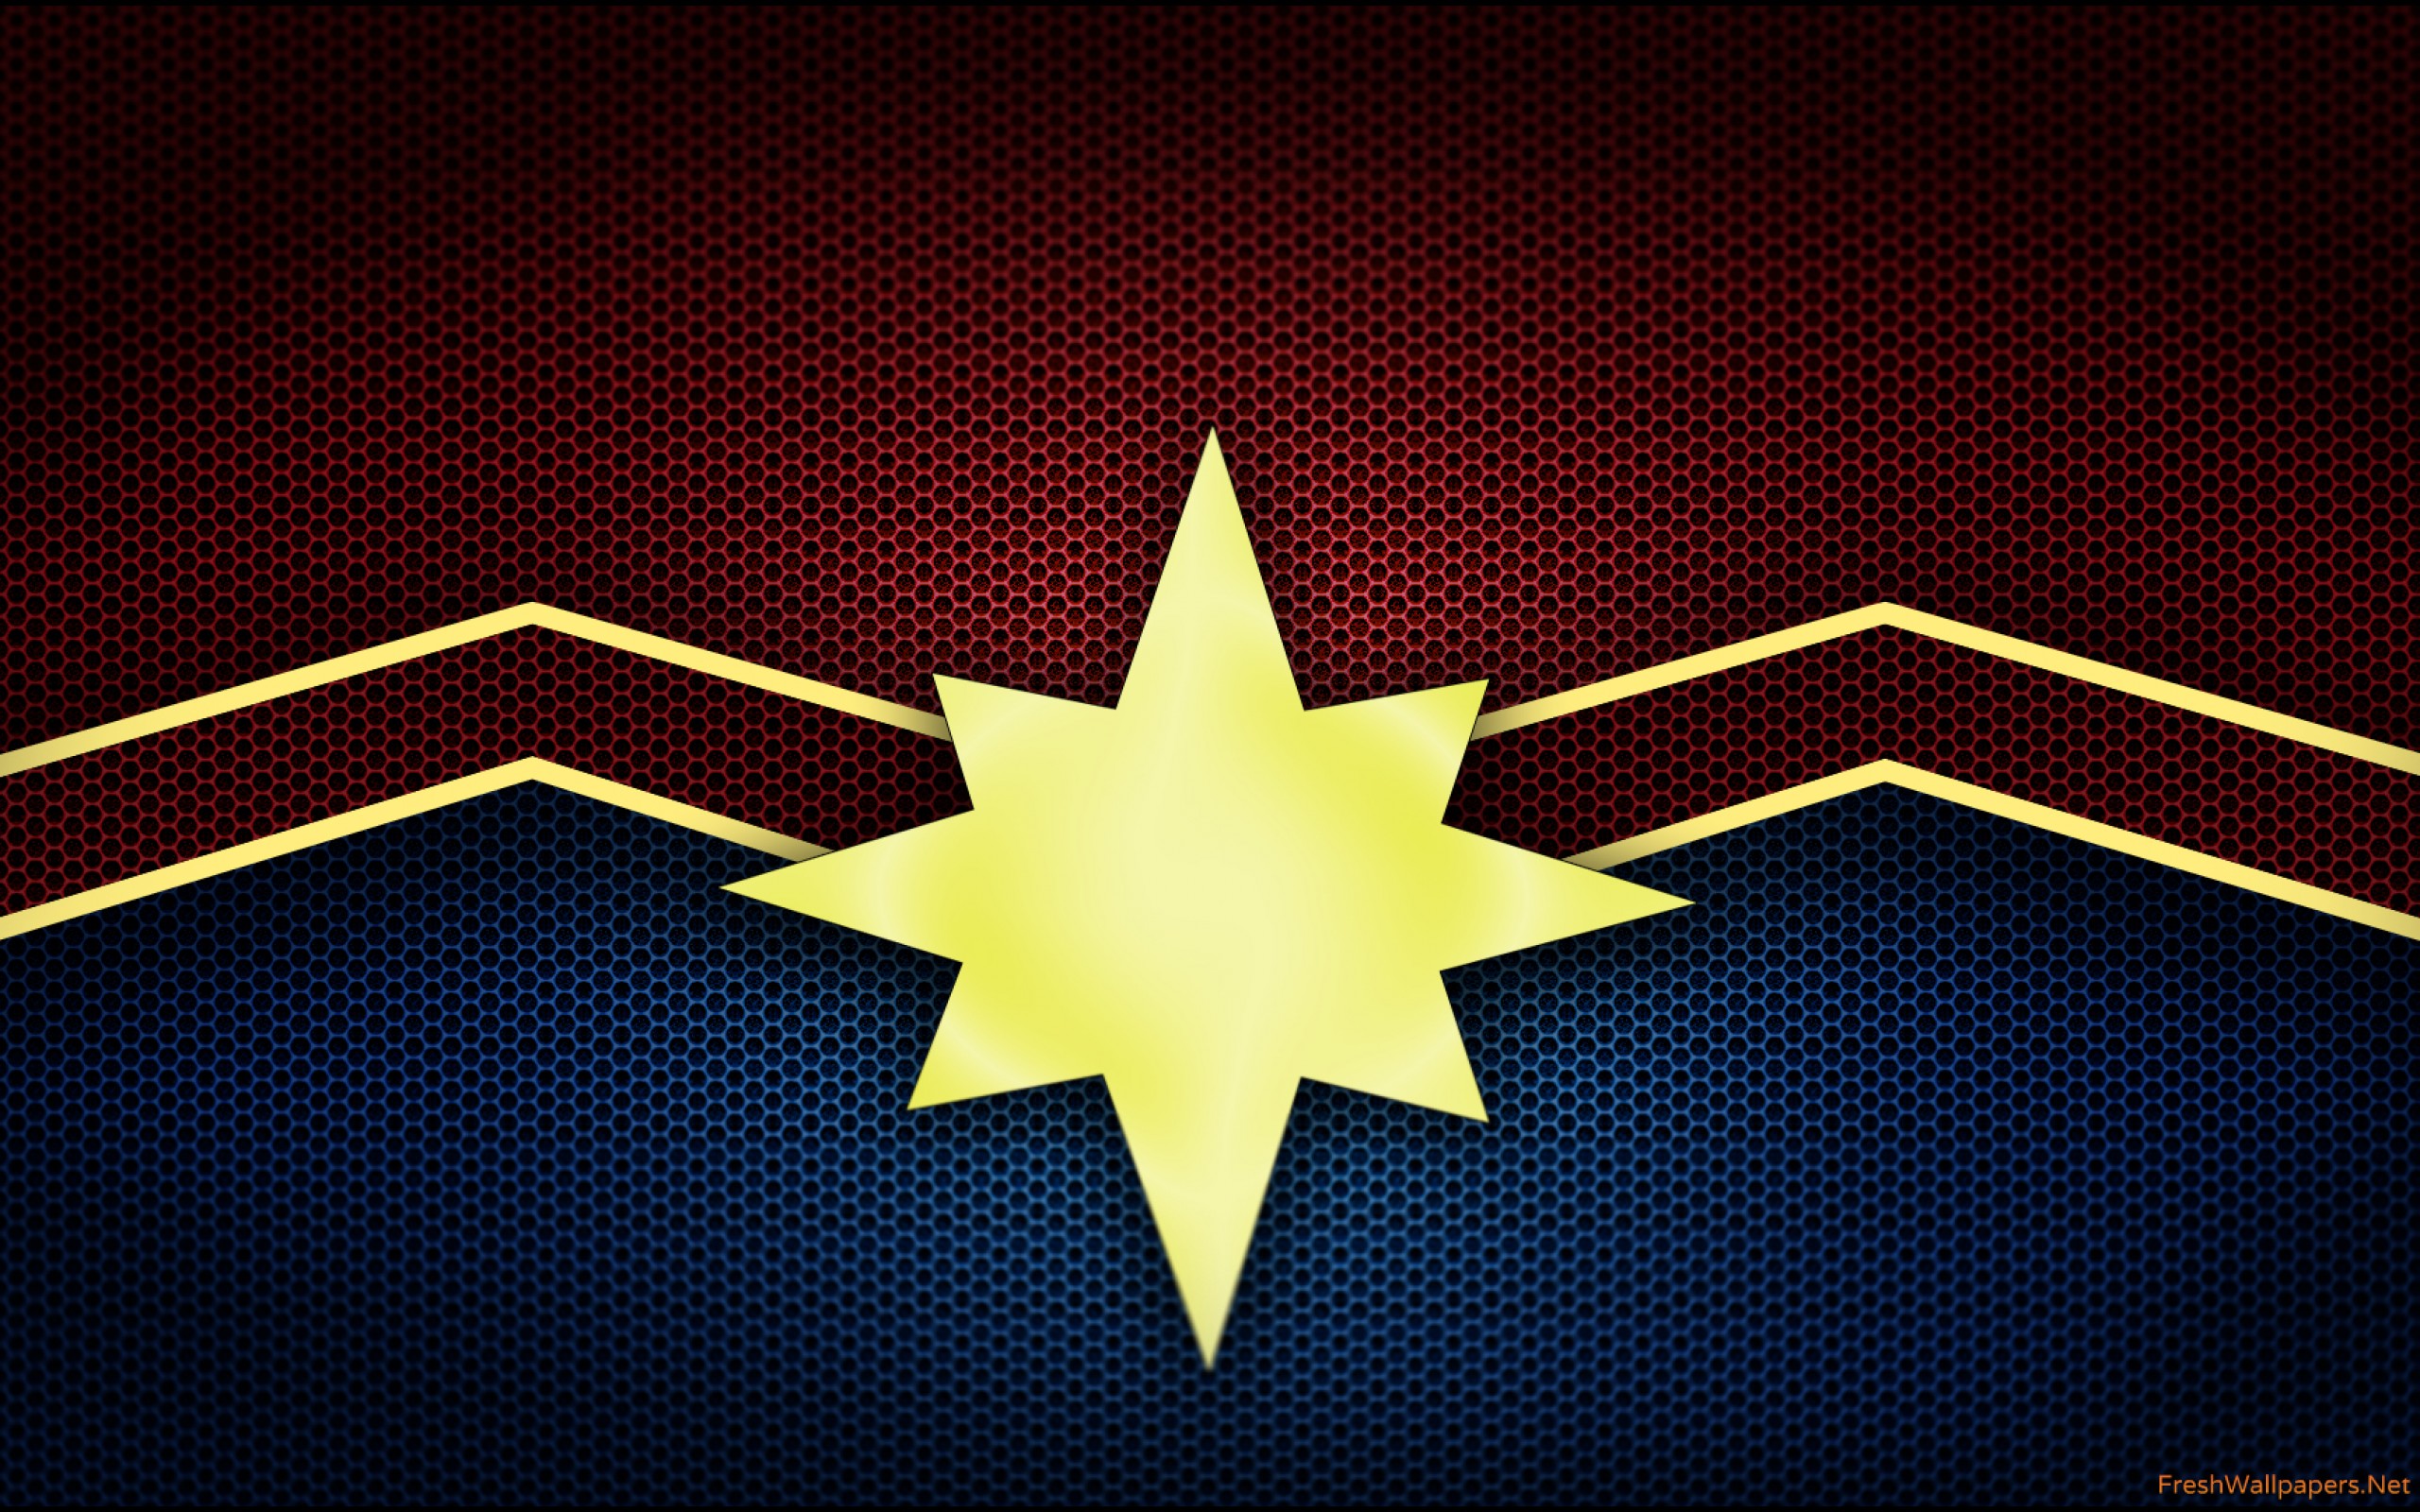 Captain Marvel Logo wallpapers Freshwallpapers